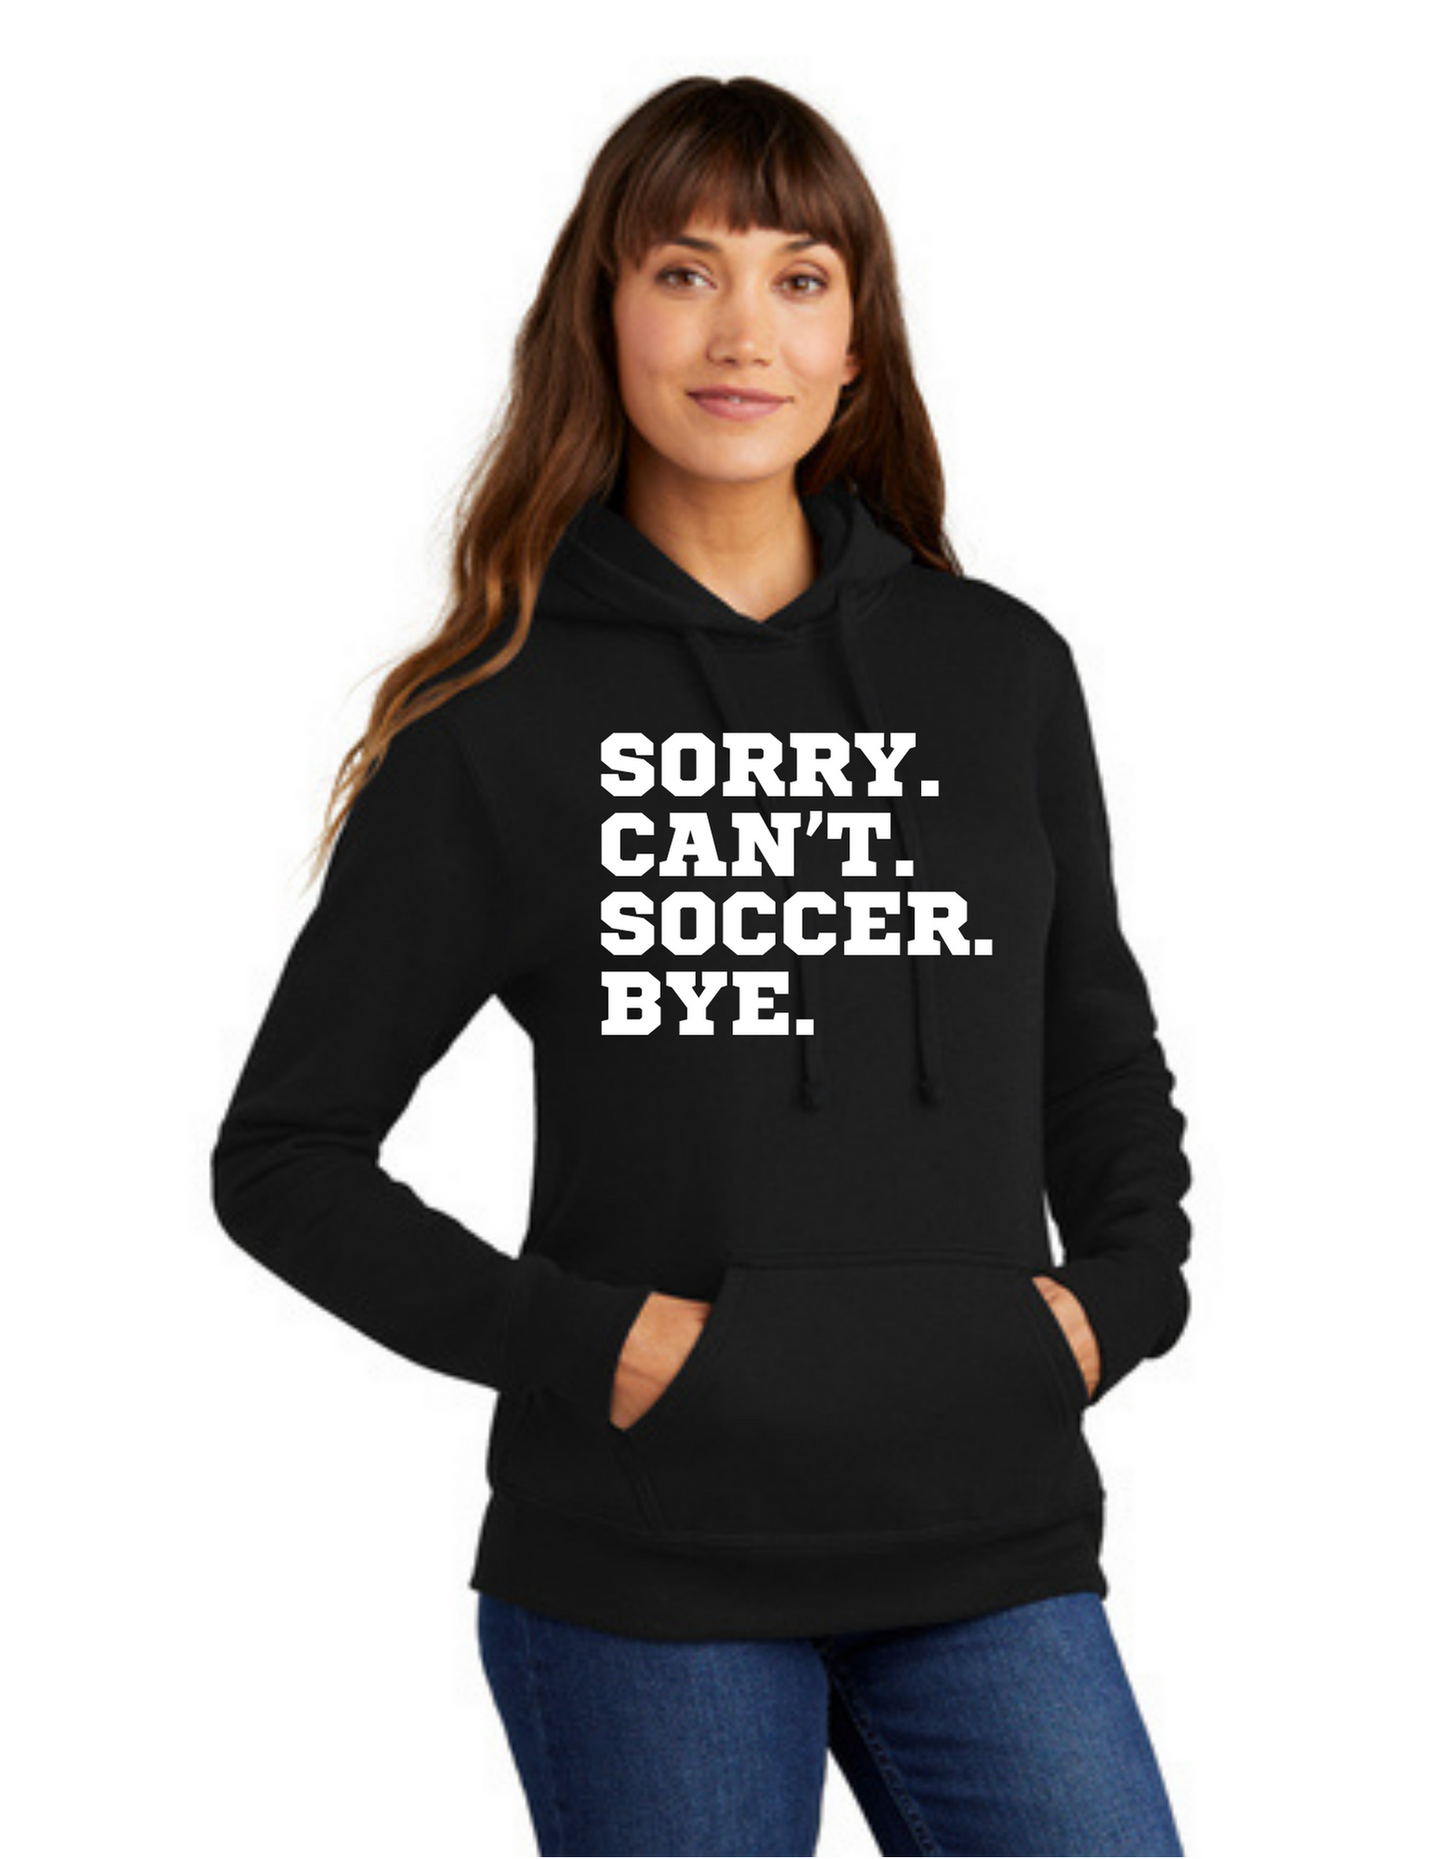 SideLine Hoodie - Sorry. Can't. Soccer. Bye.